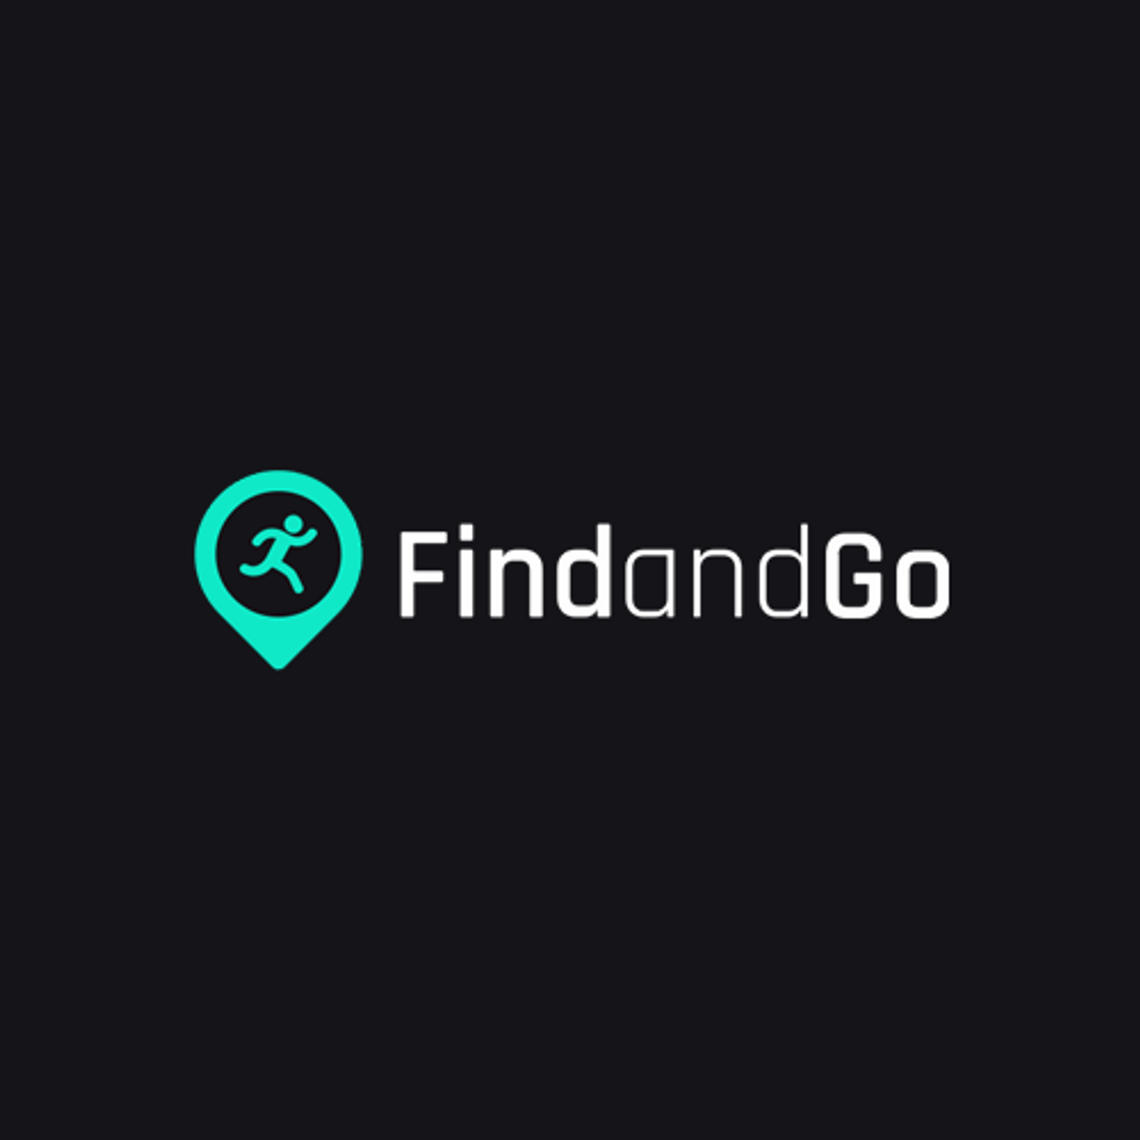 Nowa platforma FindandGo.pl